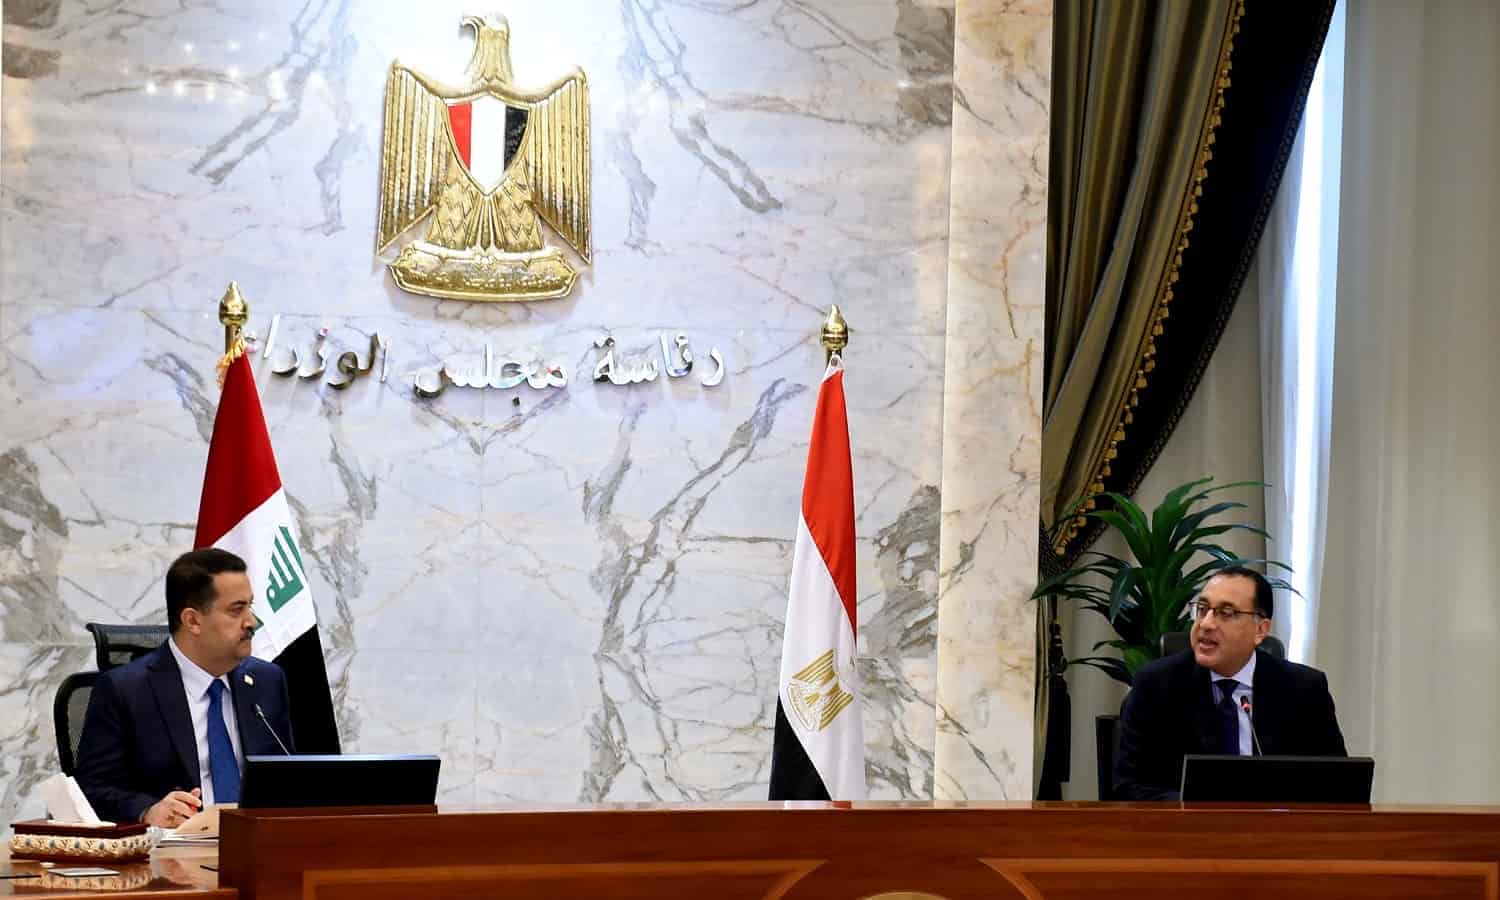 آلية التعاون الثلاثي بين مصر والعراق والأردن تحظى بفرص واعدة لتعزيز الاندماج الإقليمي